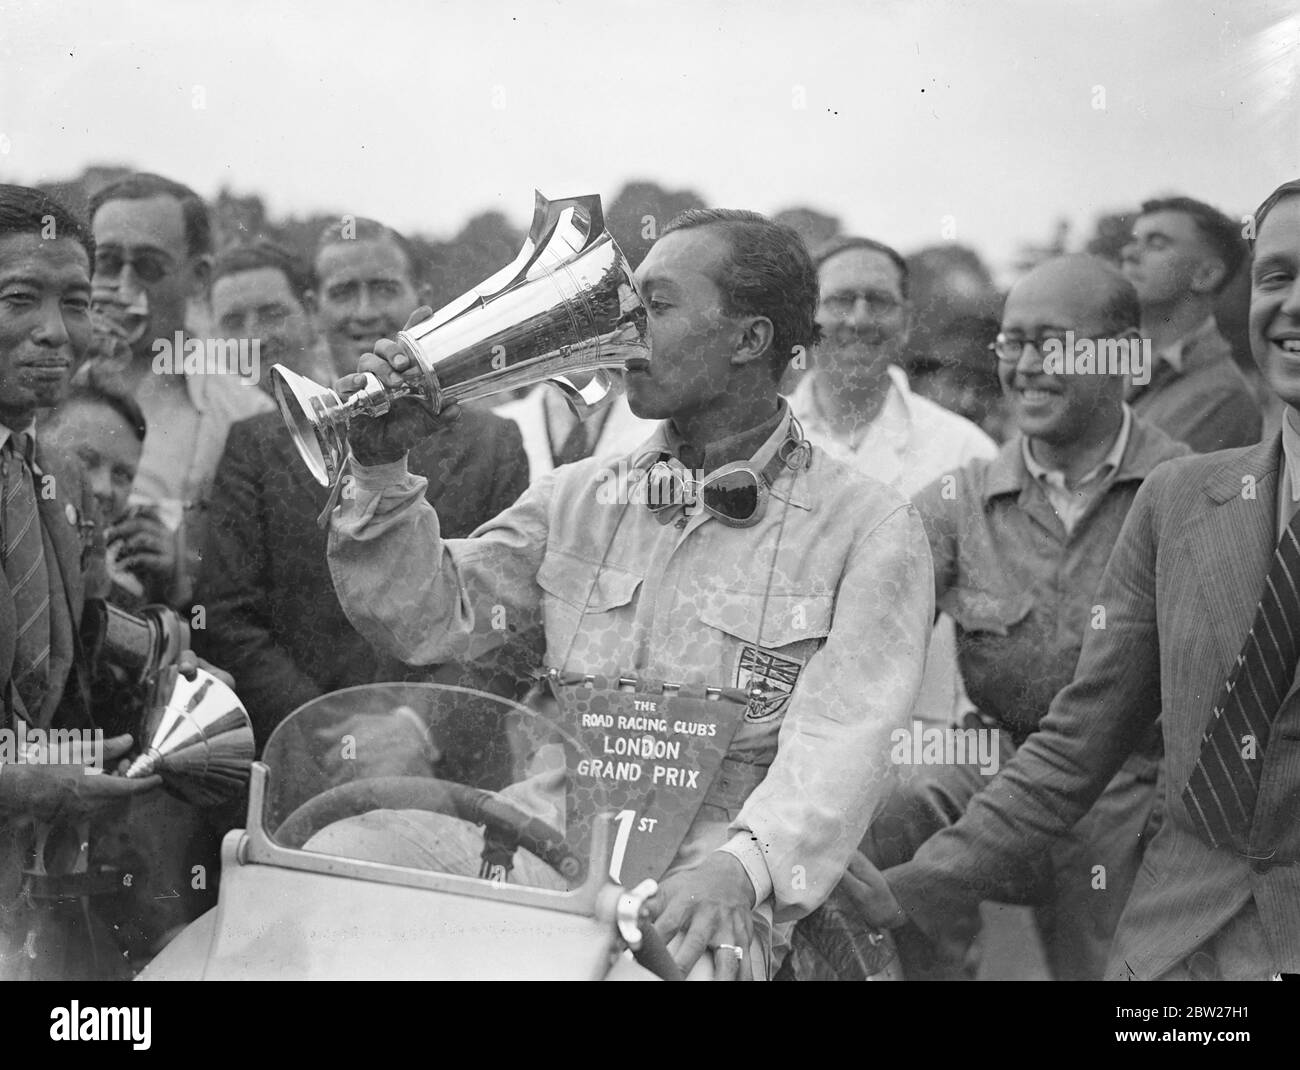 Le Prince Birabongse de Siam [Prince Bira de Siam / Thaïlande], pilotant une ERA [automobiles anglaises] a remporté le premier Grand Prix de Londres sur le nouveau circuit de course de Crystal Palace. I. F. Cornell (ERA) est deuxième et P. Maclure (Riley) troisième. Le prince Birabongse buvant de la coupe après sa victoire. 17 juillet 1937 Banque D'Images